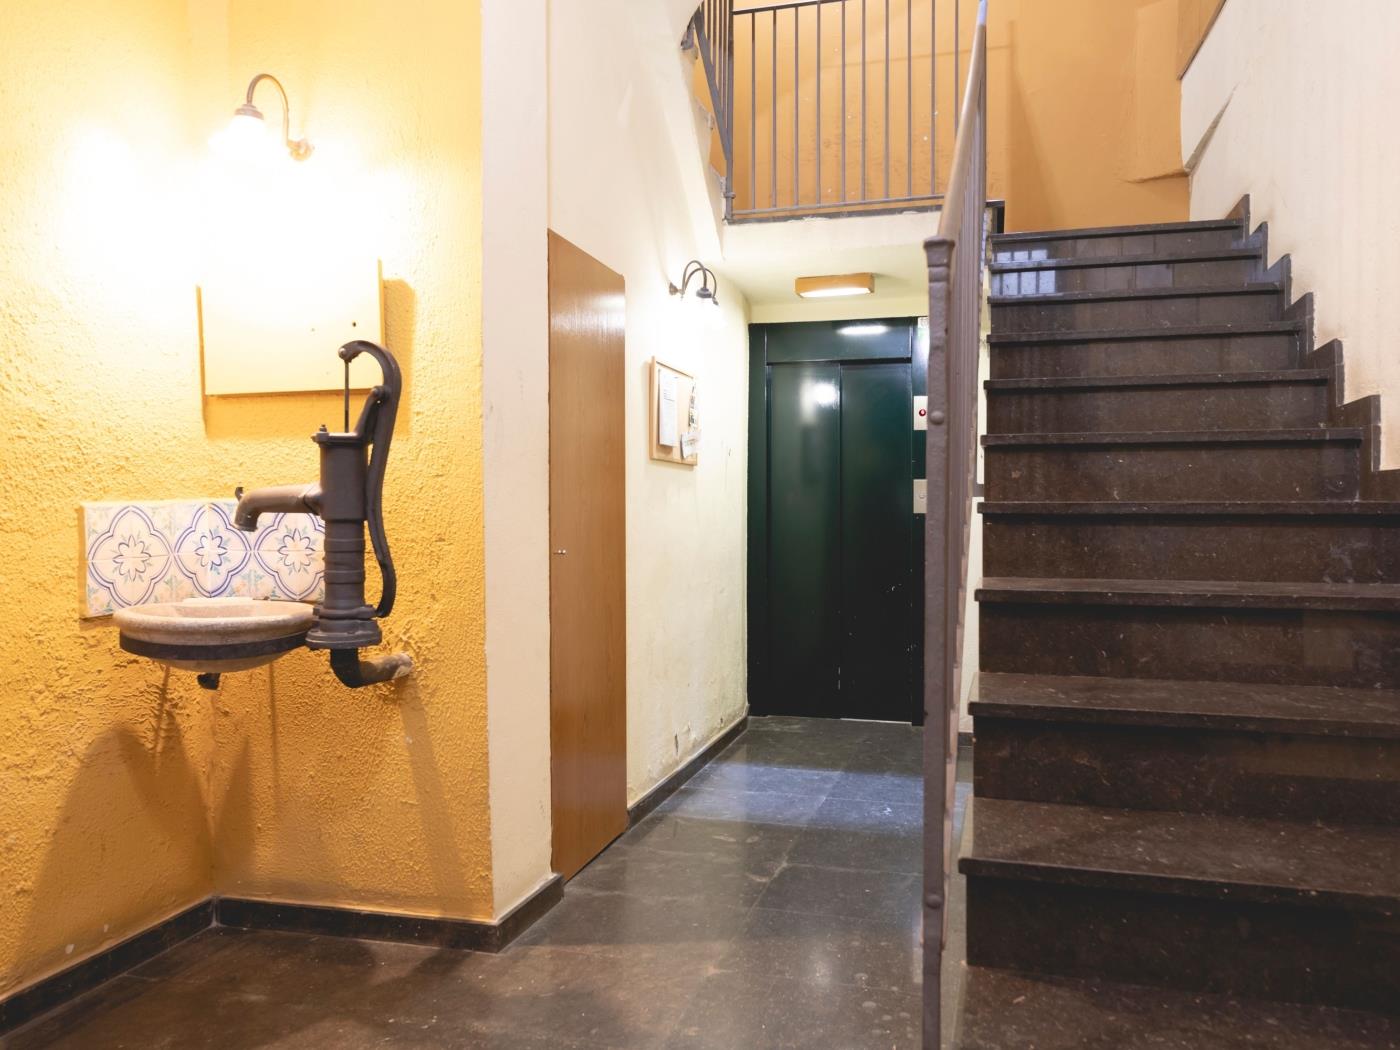 Mercaders 6 - Holiday apartment in Girona | Bravissimo in Girona